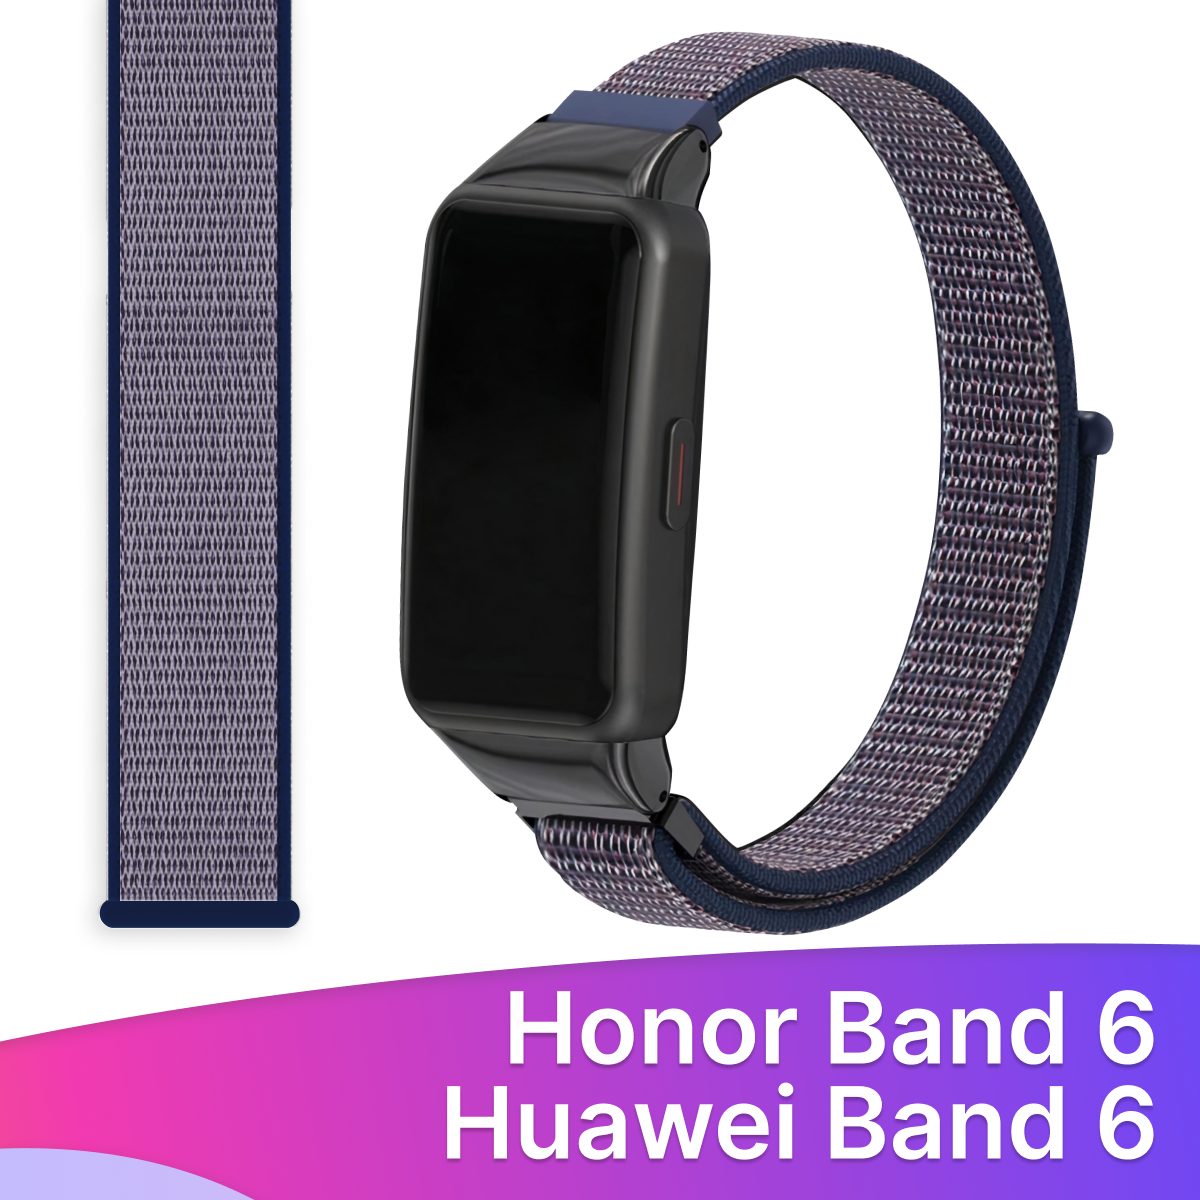 Нейлоновый ремешок для фитнес-браслета Honor Band 6 и Huawei Band 6 / Тканевый браслет на смарт часы Хонор Бэнд 6 и Хуавей Бэнд 6 / Сине-фиолетовый